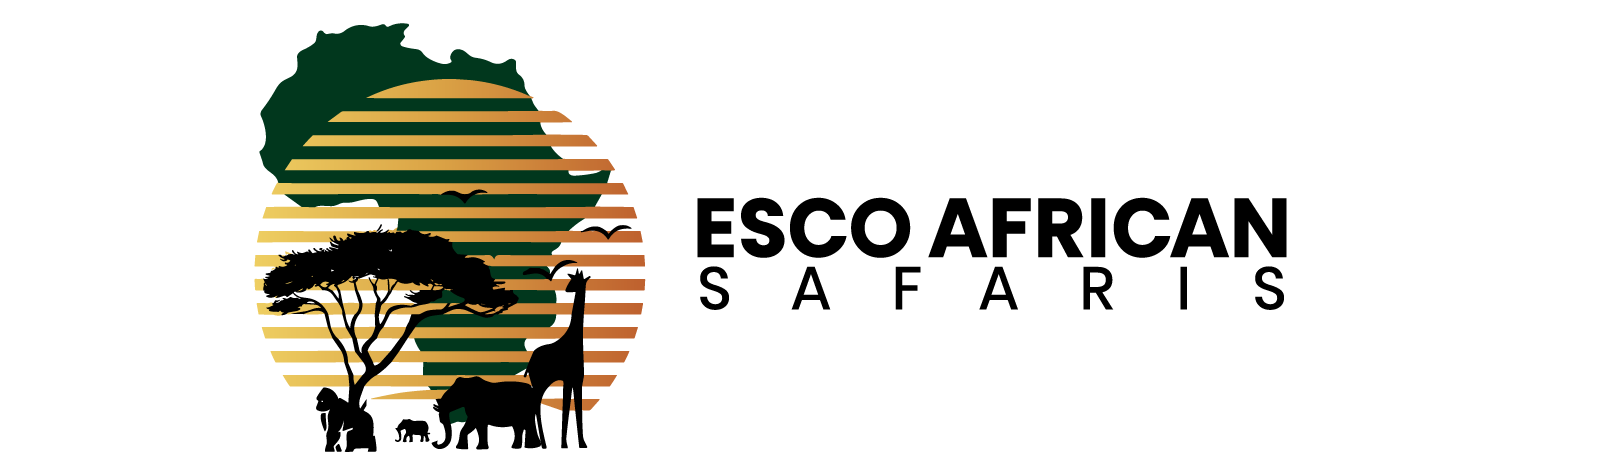 Esco African Safaris